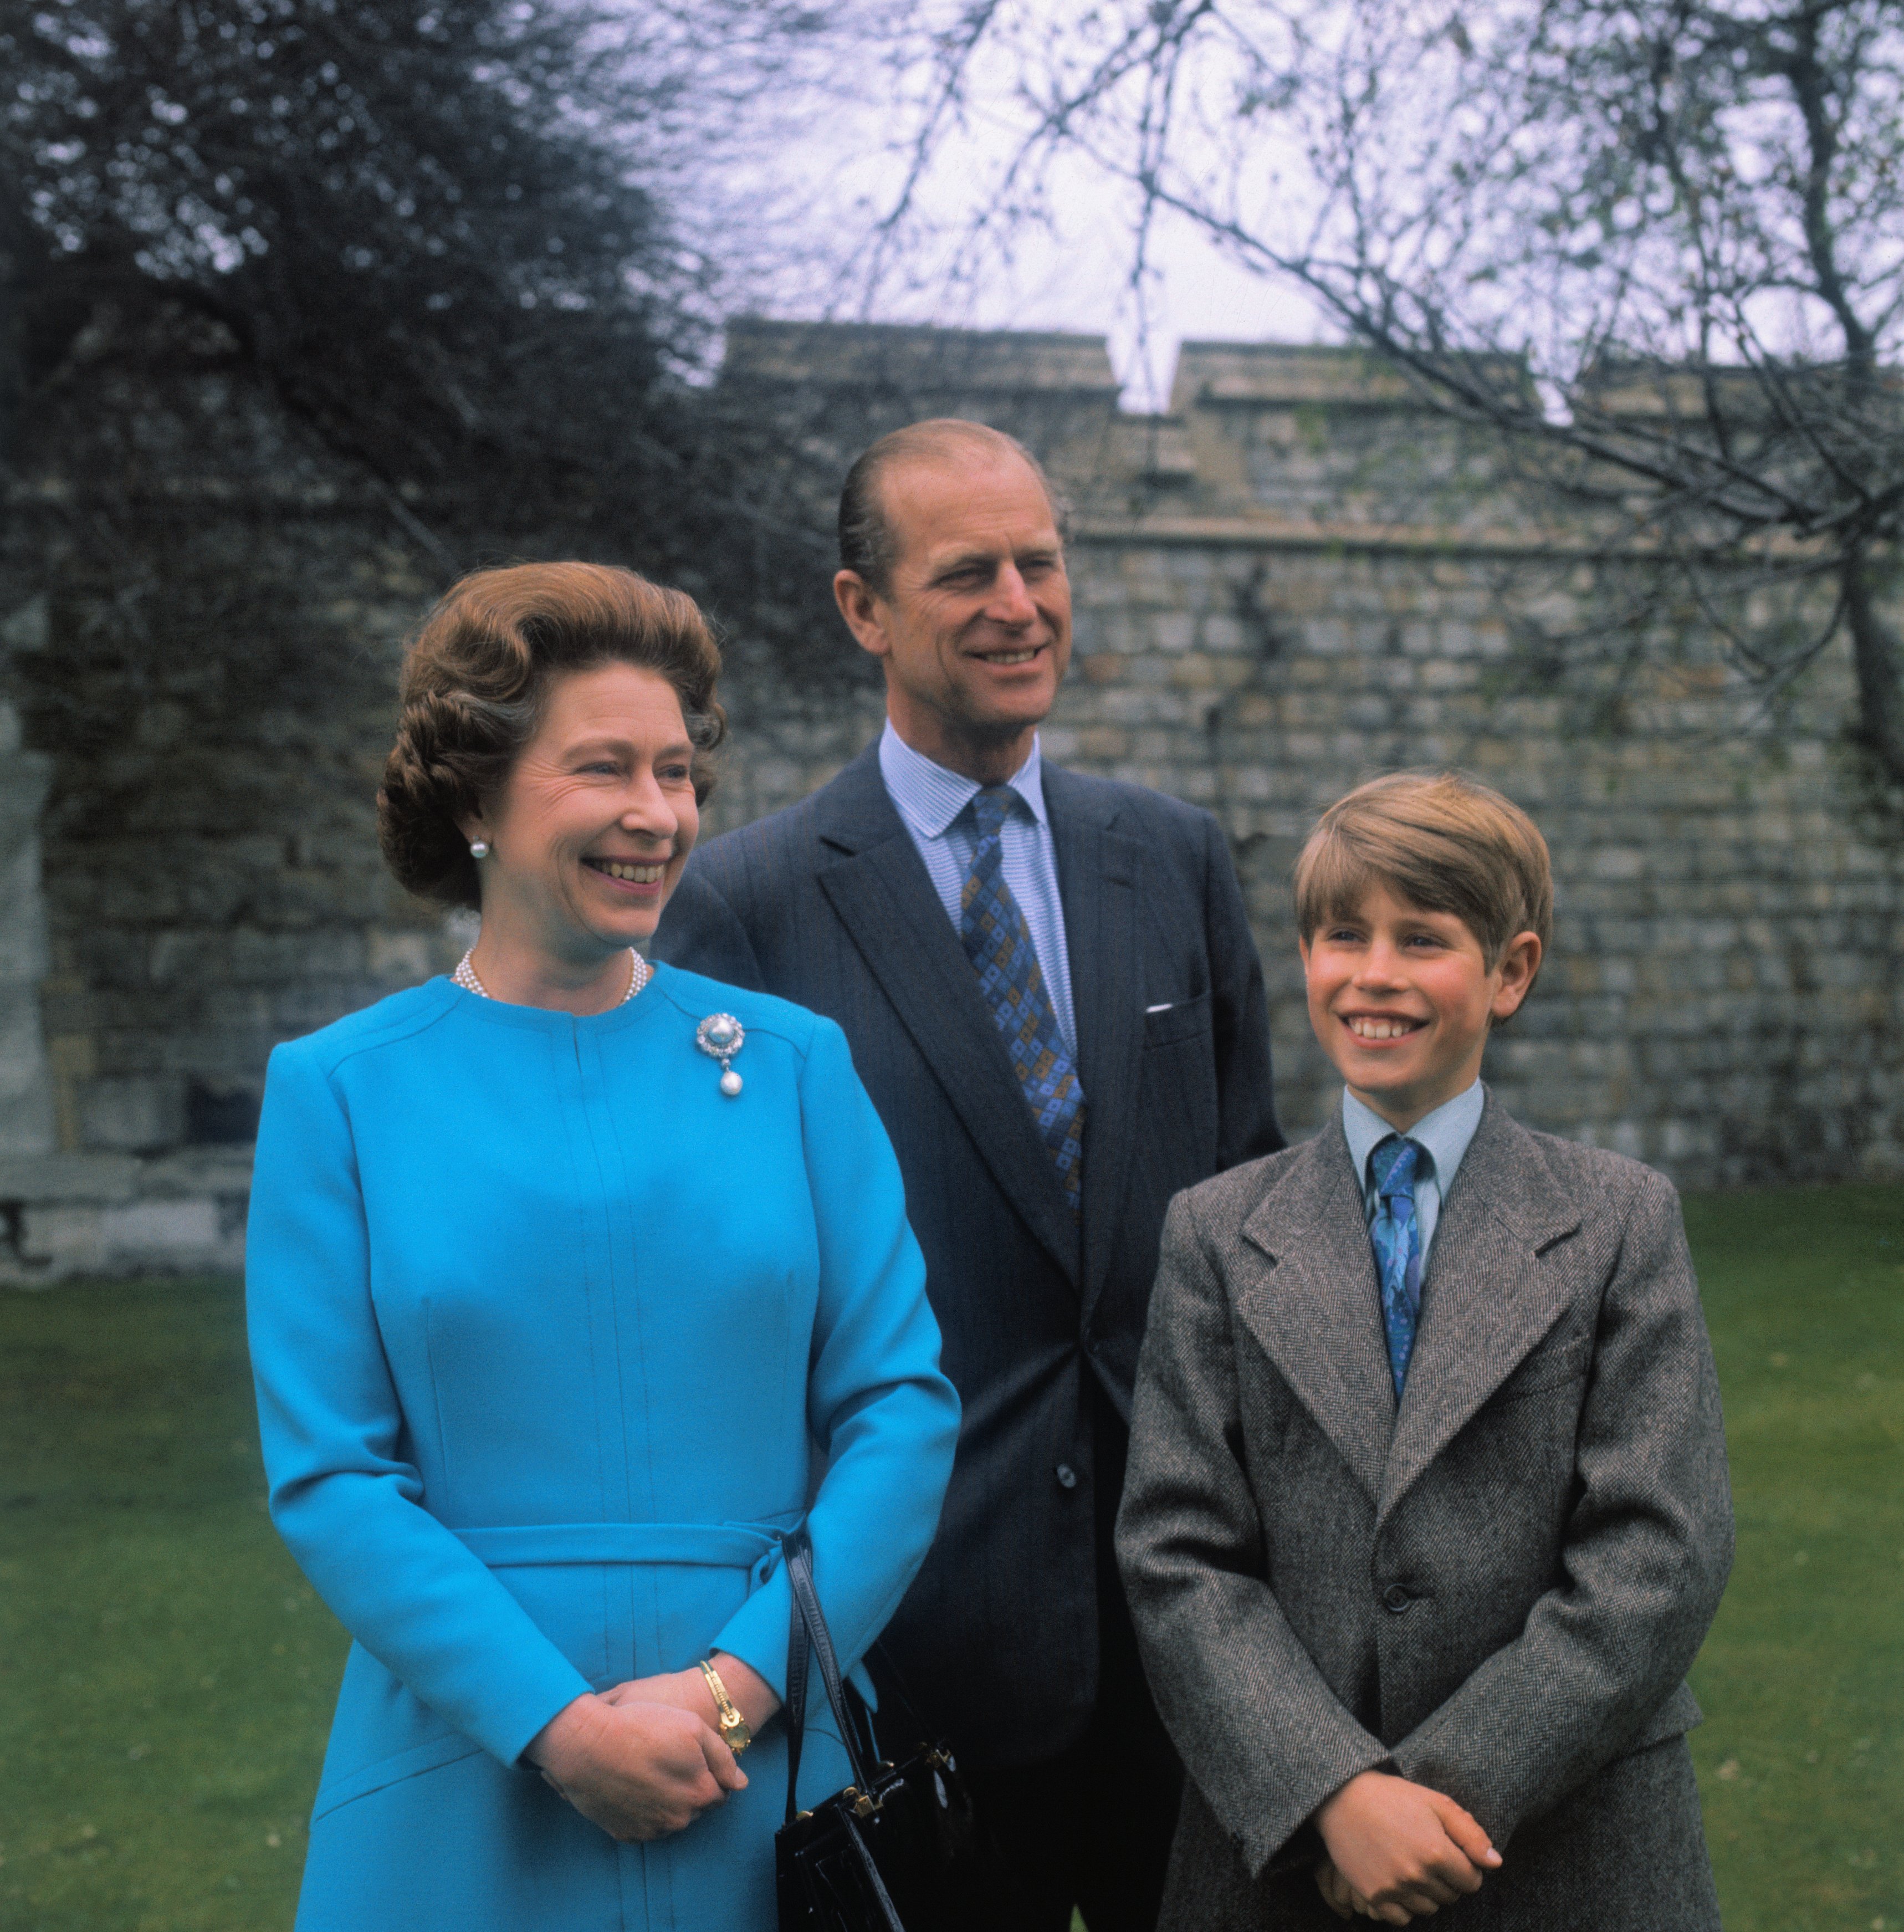 La reine Elizabeth, le prince Philip et leur fils, le prince Edward, en 1976. | Source : Getty Images